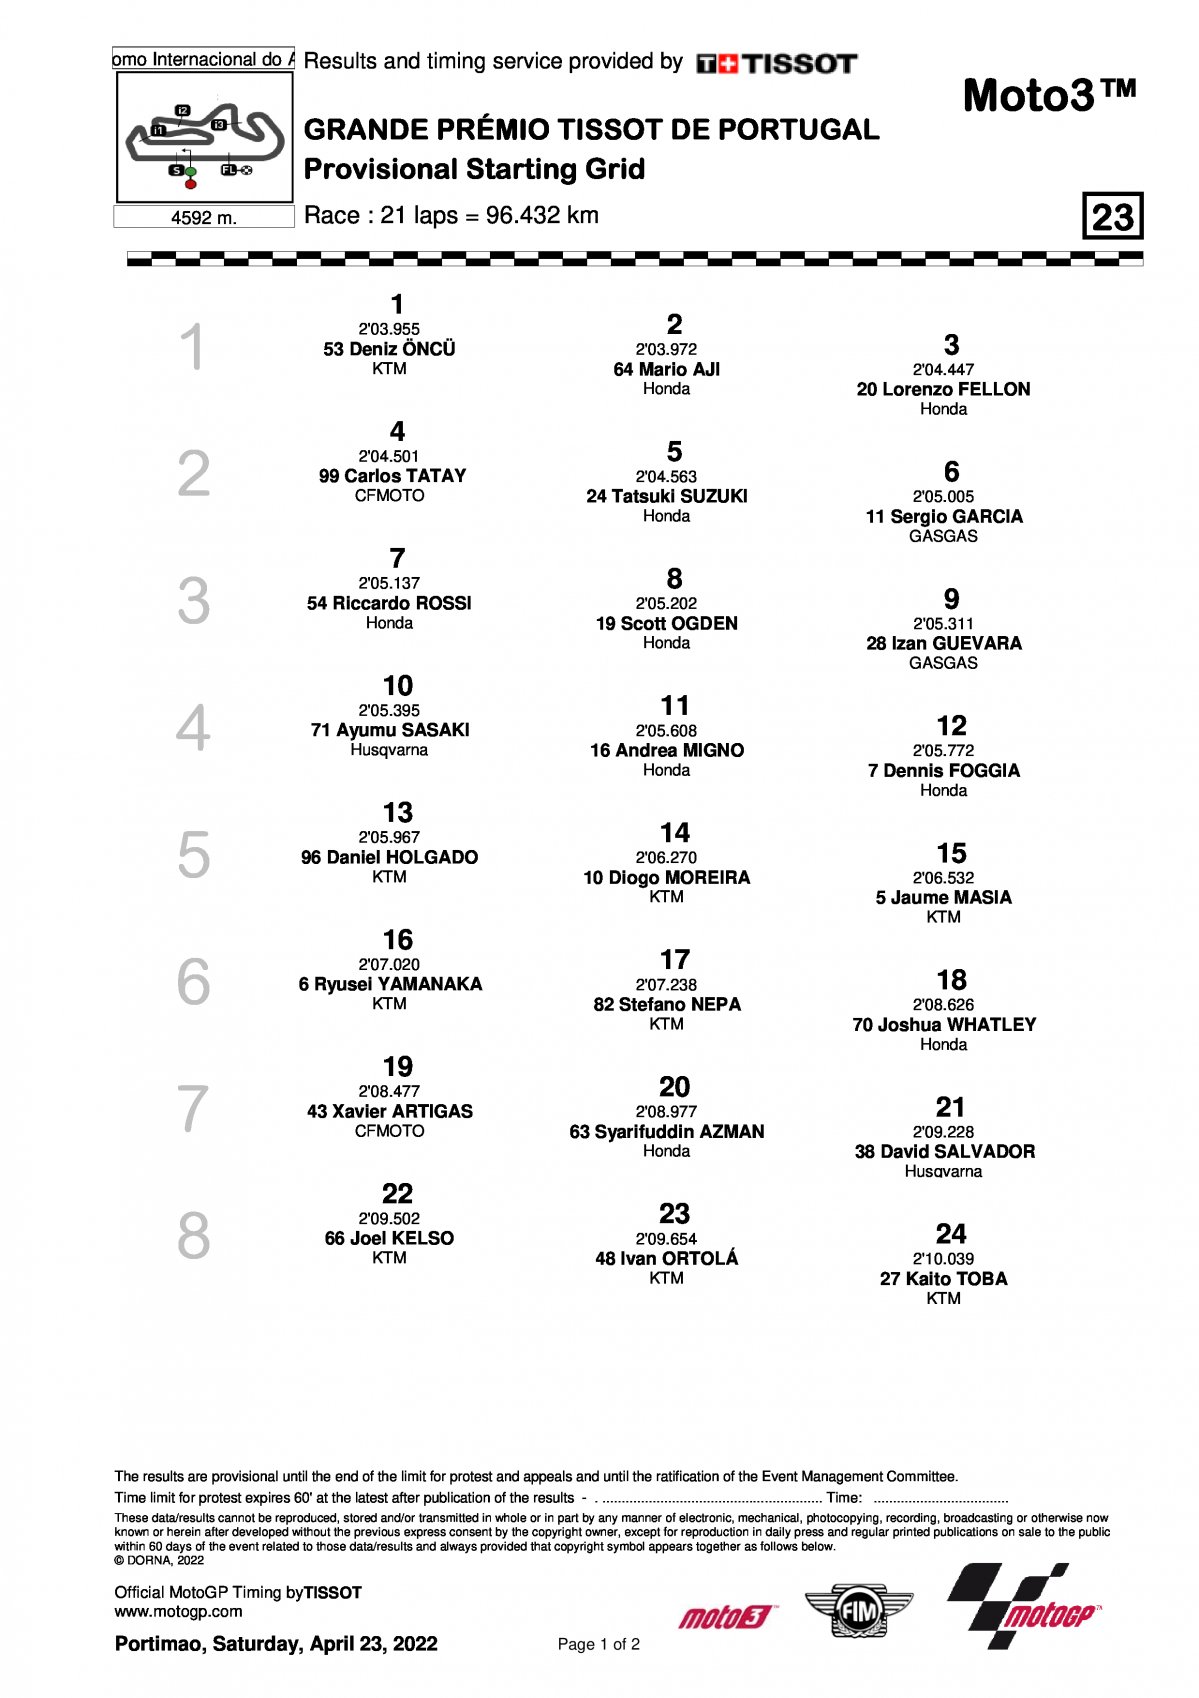 Стартовая решетка Гран-При Португалии Moto3 (24/04/2022)